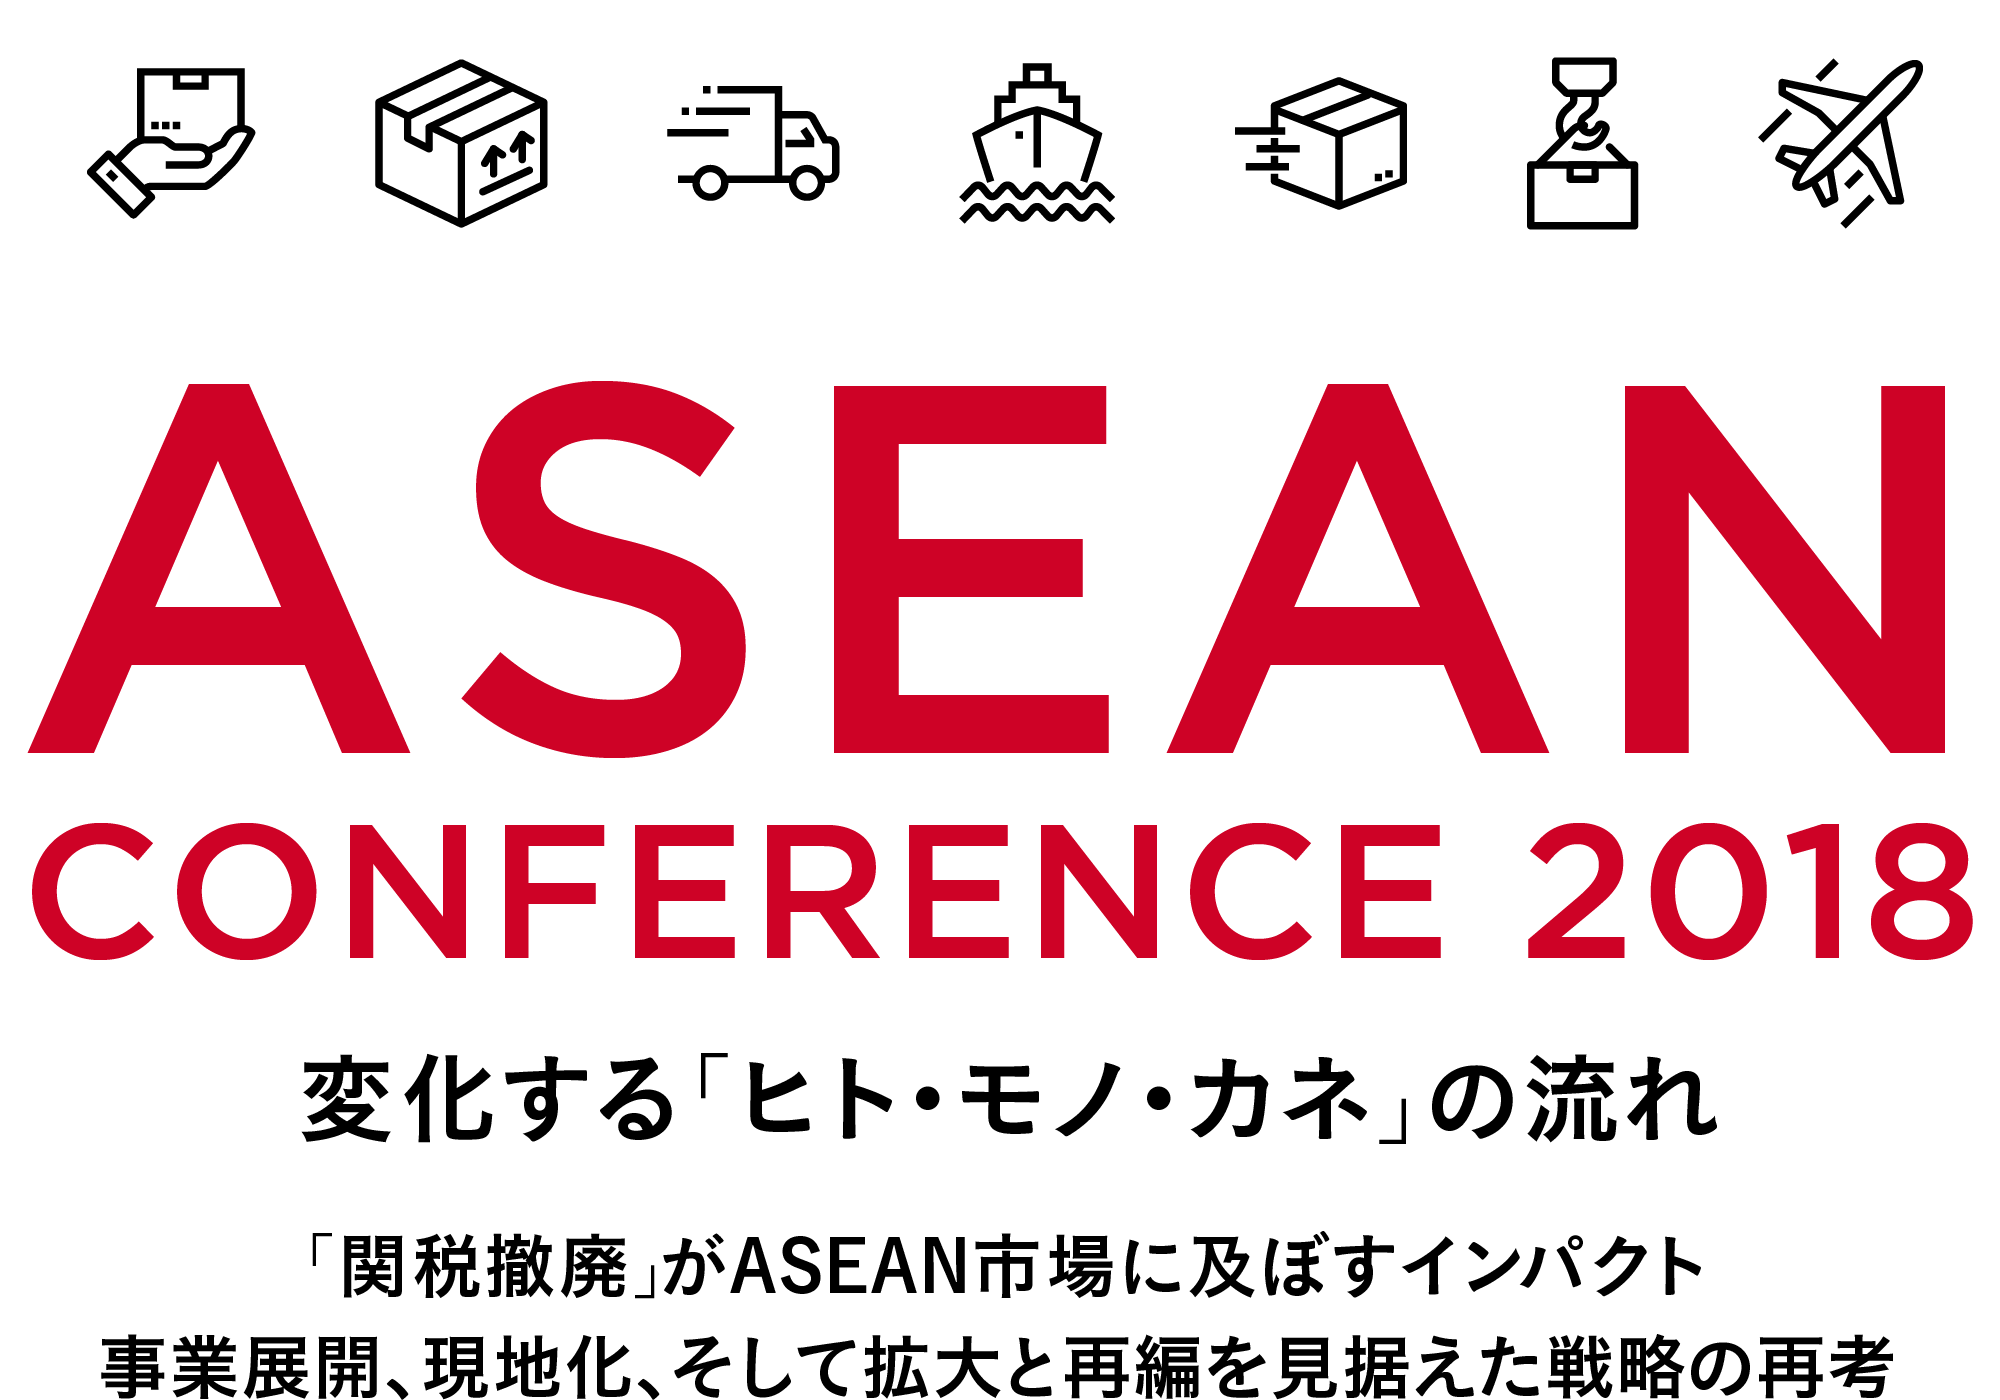 ASEAN CONFERENCE 2018　変化する「ヒト・モノ・カネ」の流れ